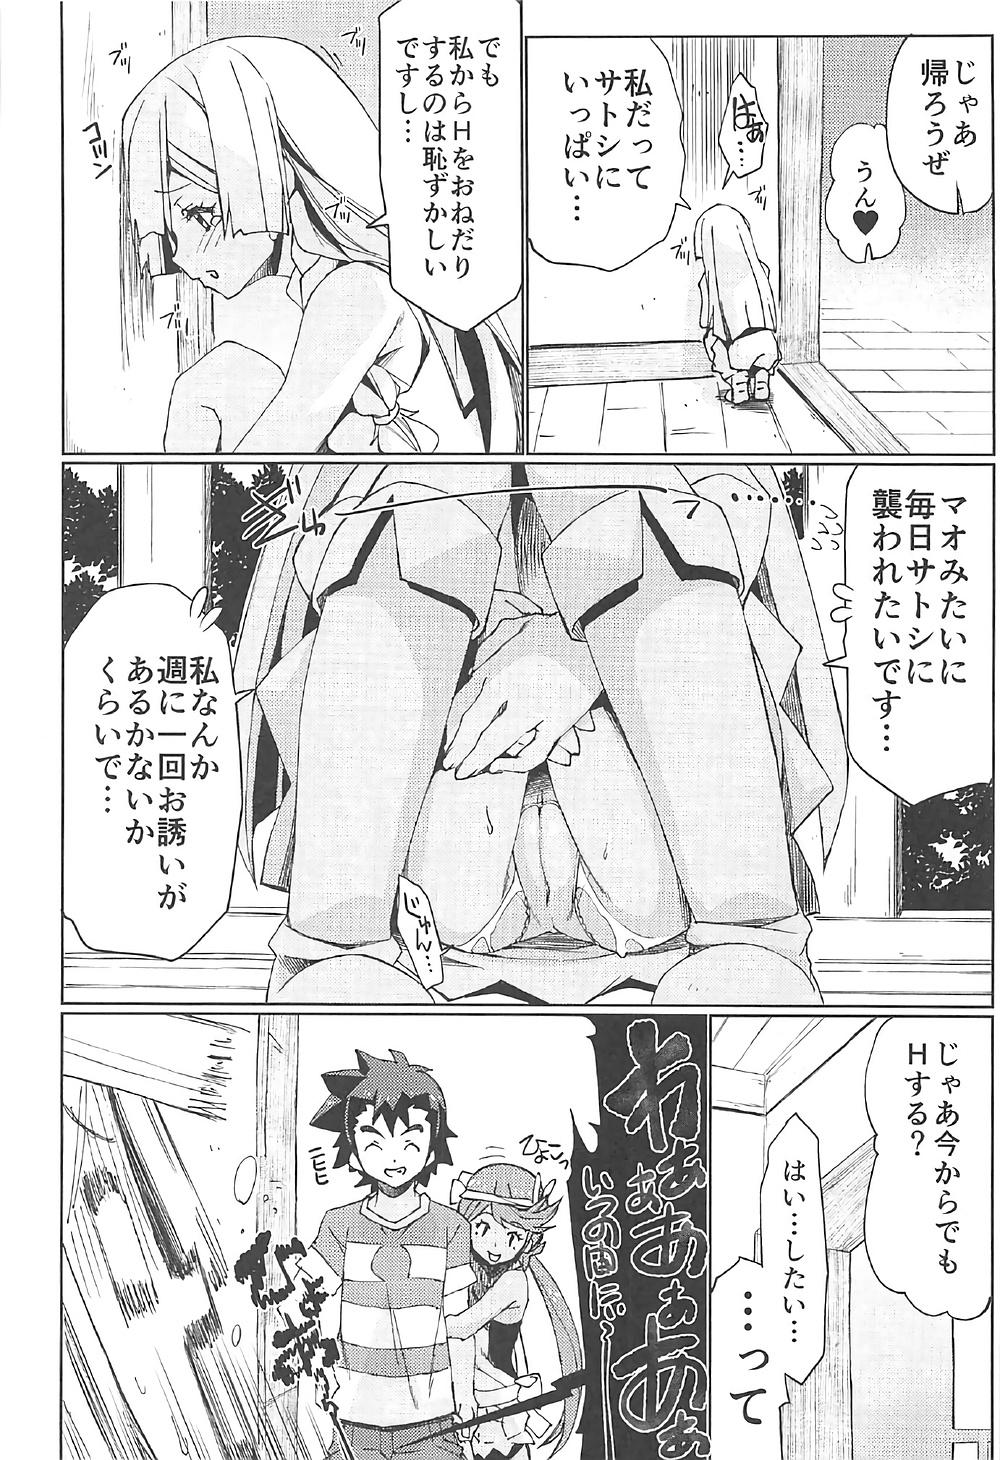 Gozada Watashi ga sono Ki ni nareba Ronriteki ni! 2!! - Pokemon Cartoon - Page 9